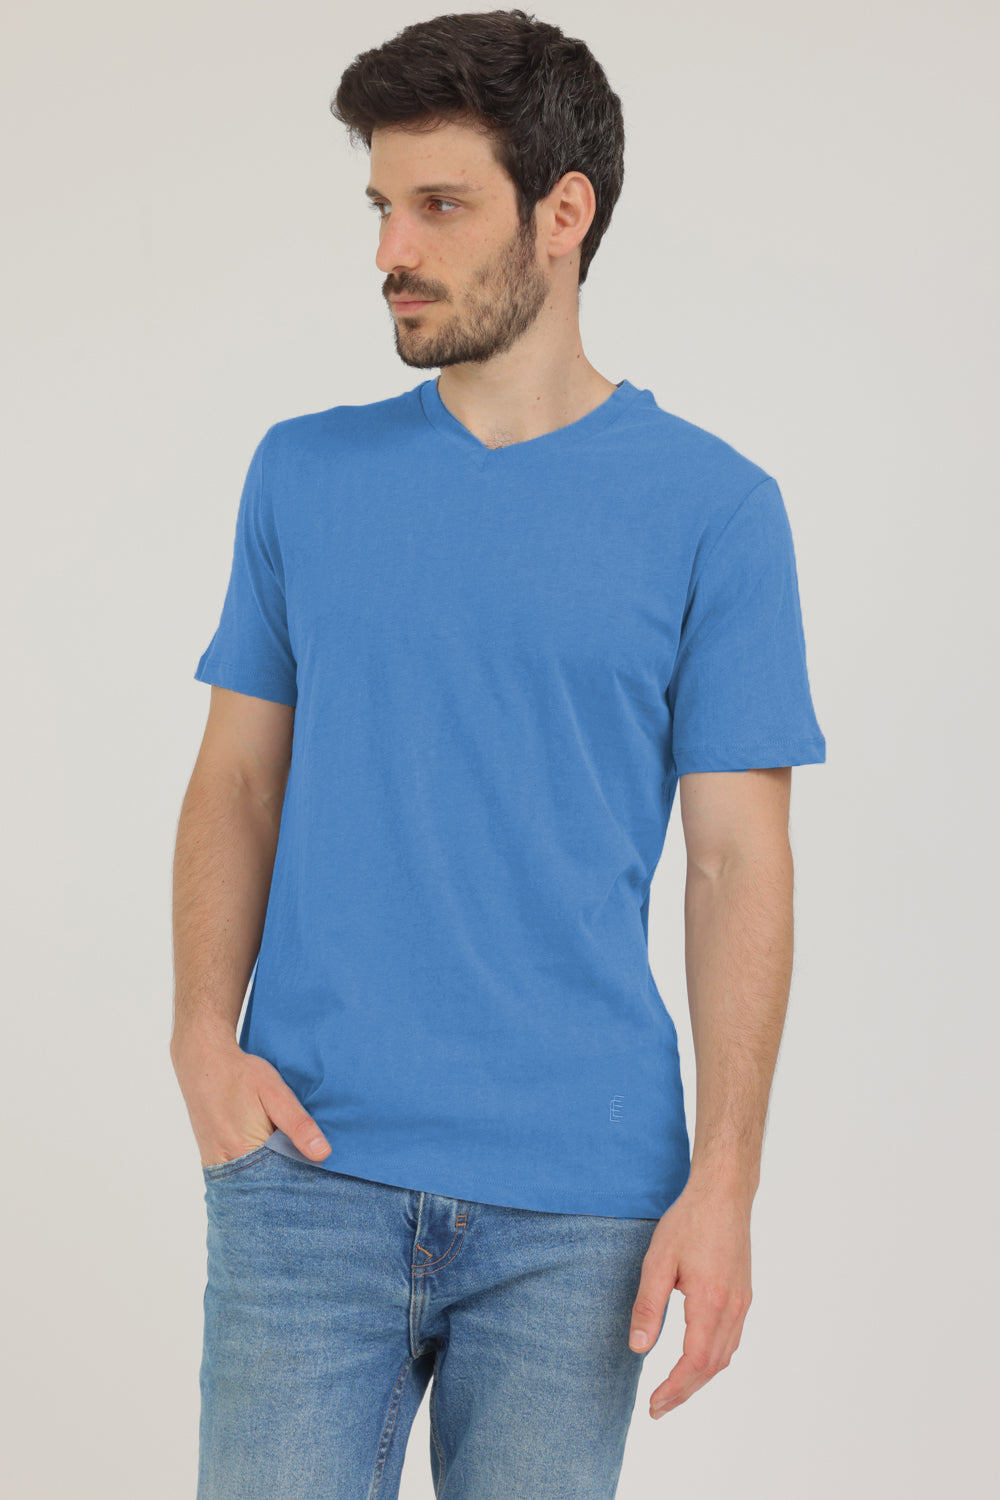 חולצת טי שירט קצרה לגבר צבע כחול שמיים